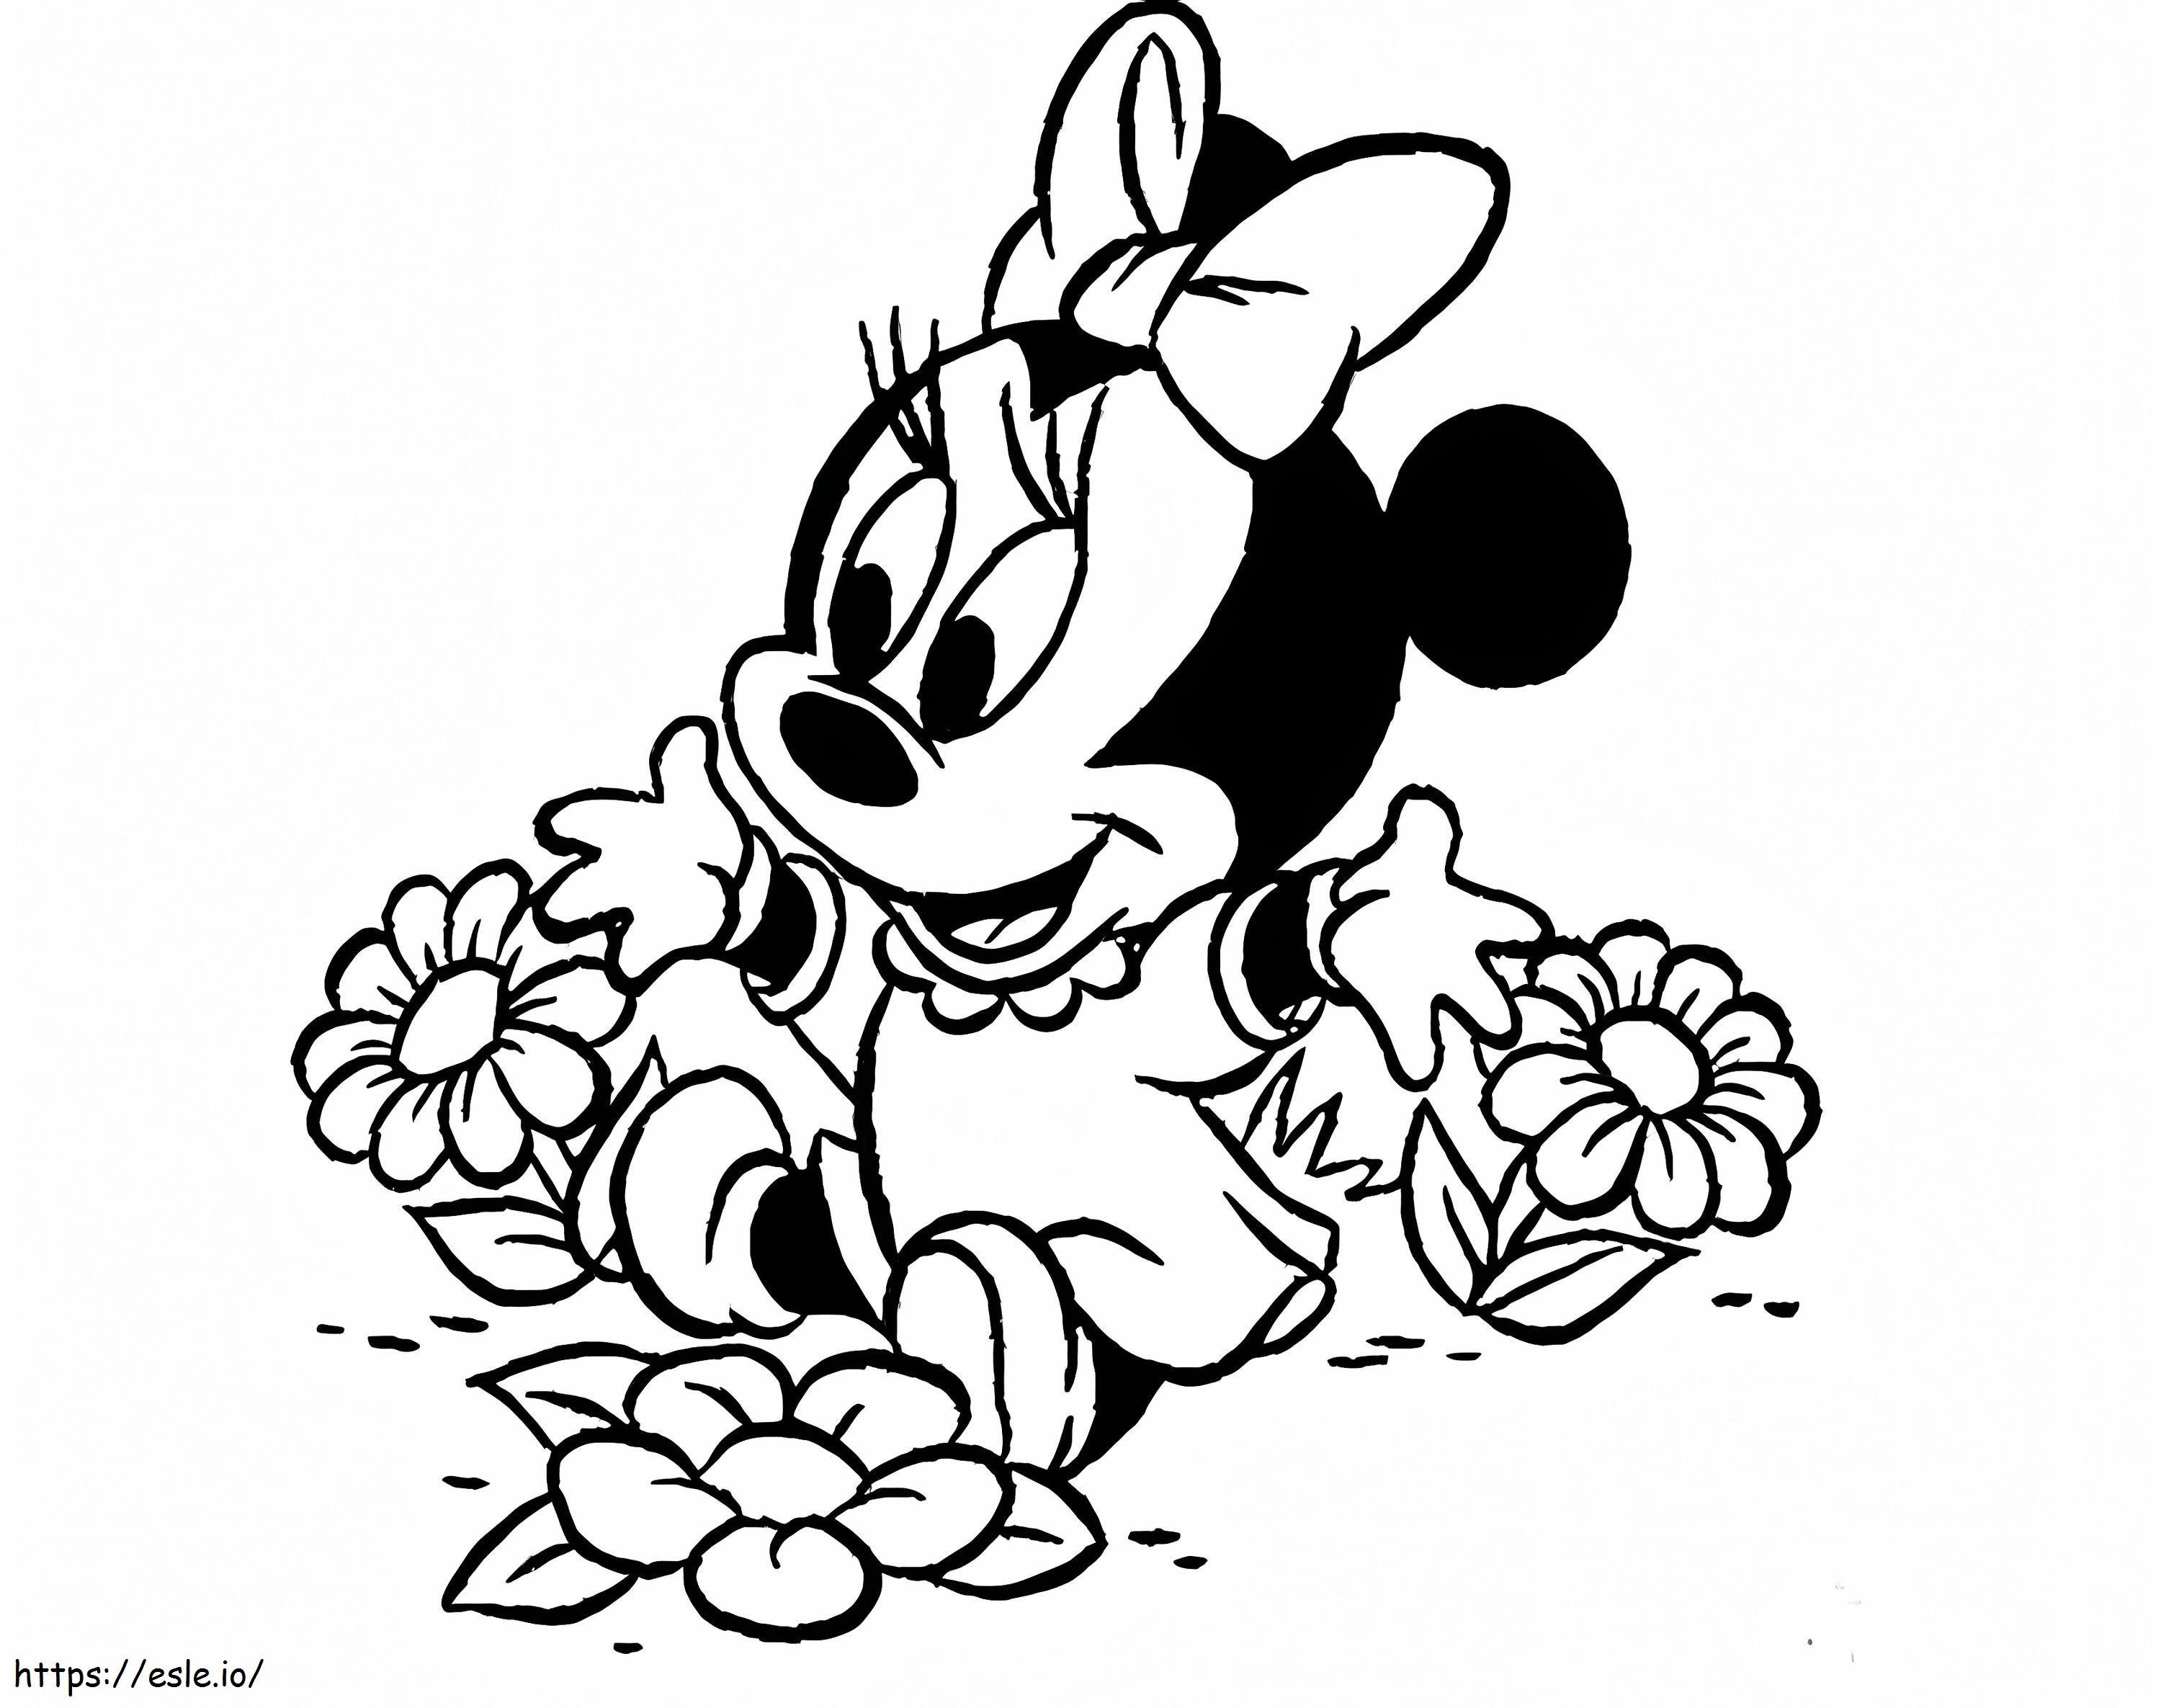 Minnie Mouse com flores para colorir